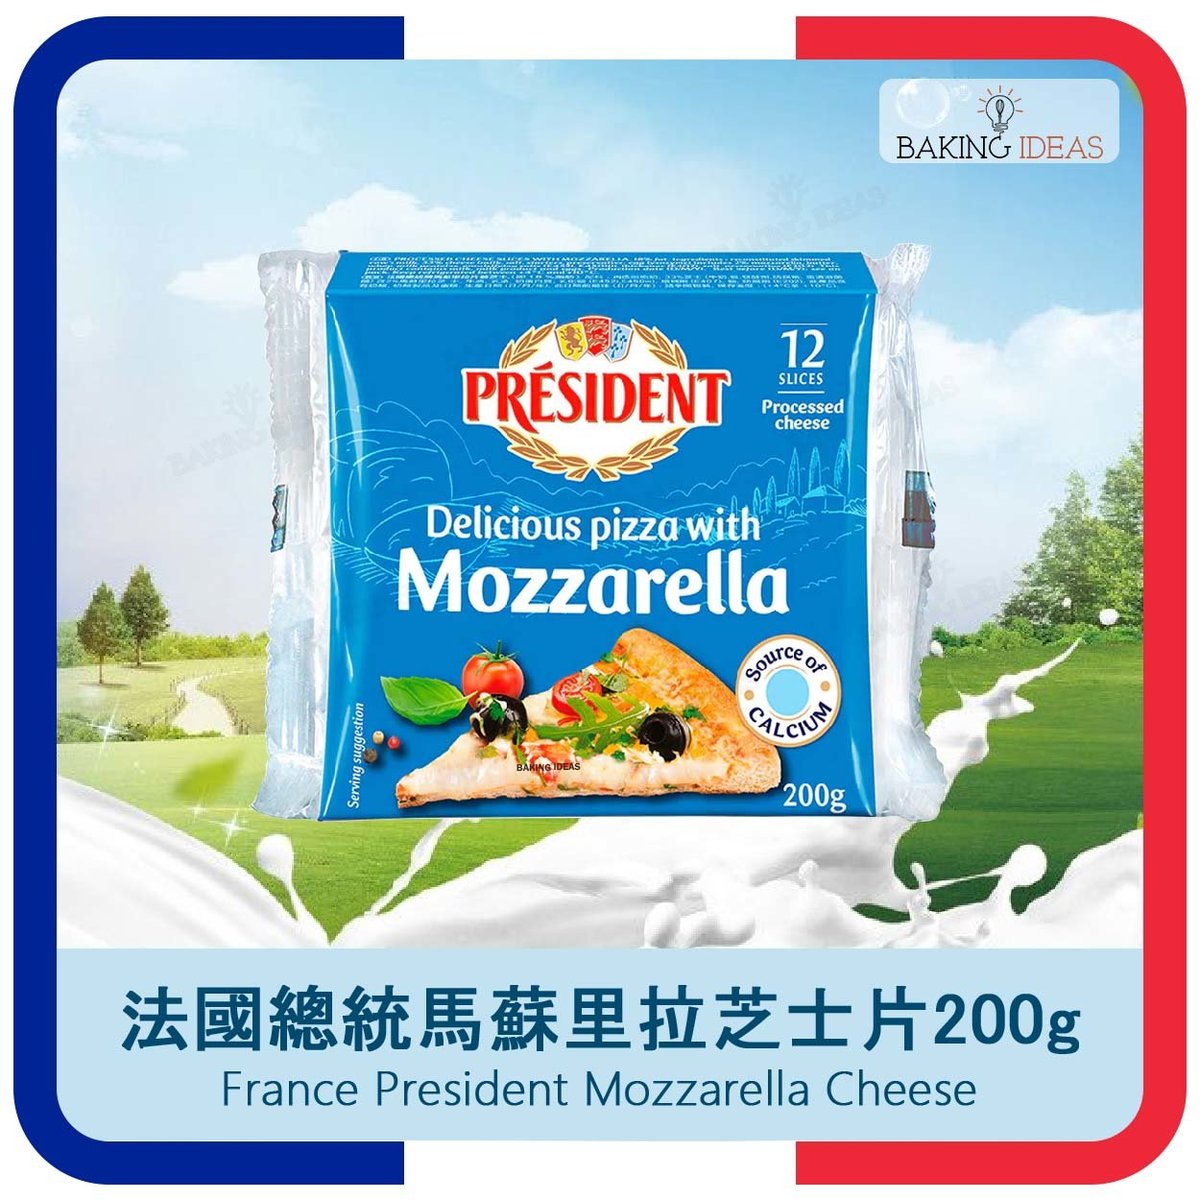 芝士片 Mozzarella 馬蘇里拉  200g (12片) - 總統 President